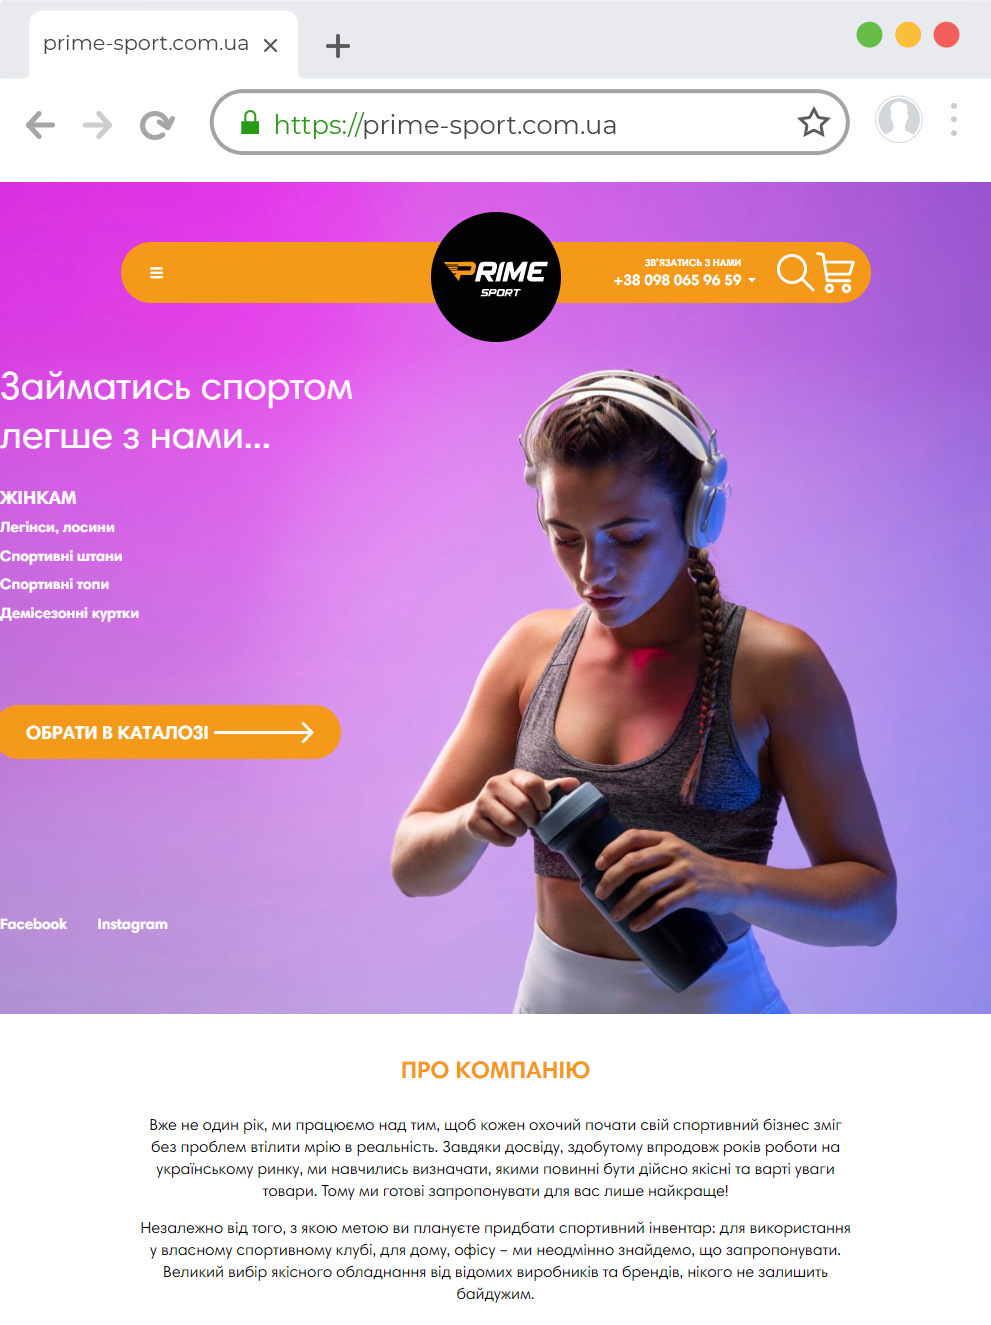 Development of the online store of sports goods prime-sport com ua